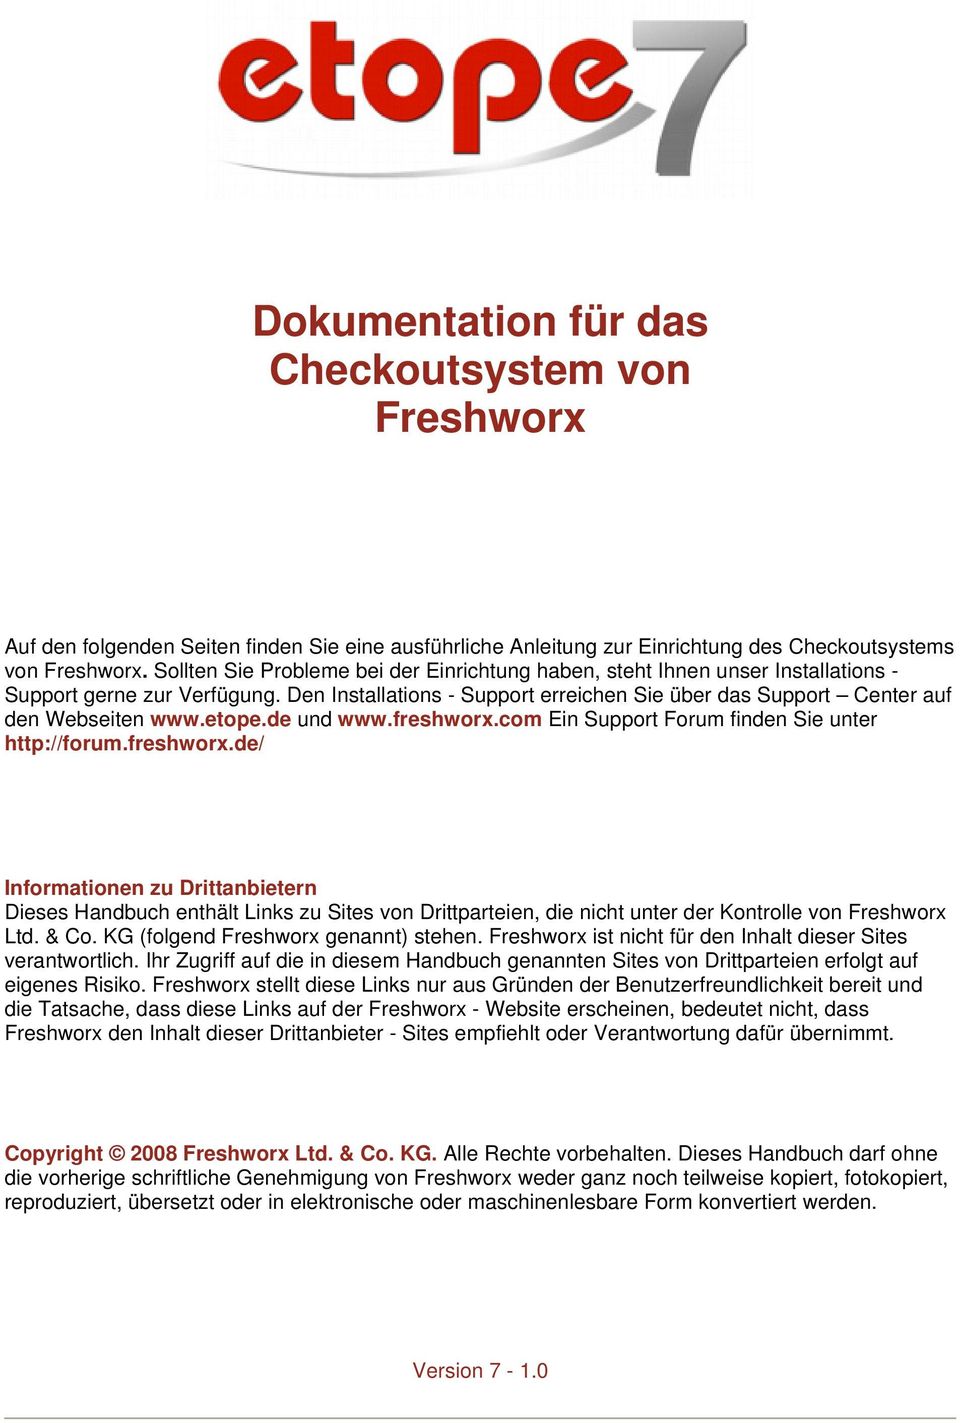 etope.de und www.freshworx.com Ein Support Forum finden Sie unter http://forum.freshworx.de/ Informationen zu Drittanbietern Dieses Handbuch enthält Links zu Sites von Drittparteien, die nicht unter der Kontrolle von Freshworx Ltd.